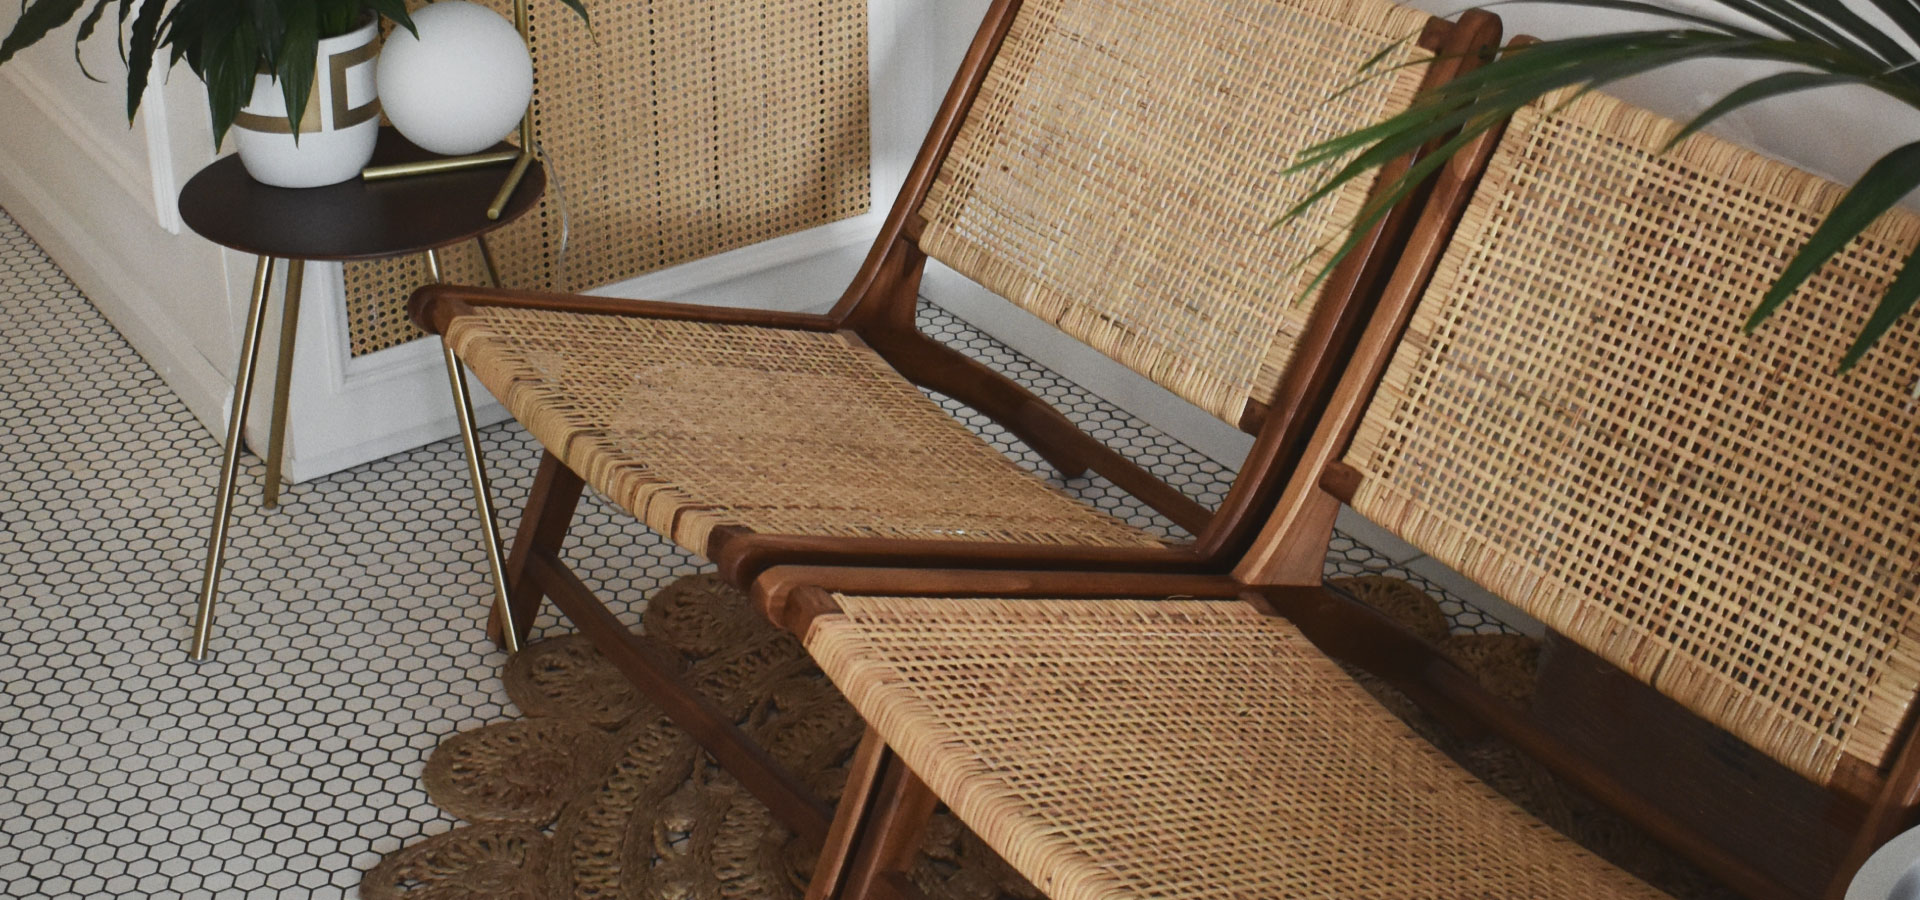 Rattanowe krzesła na drewnianej konstrukcji, w tle niski stolik na złotych nóżkach.